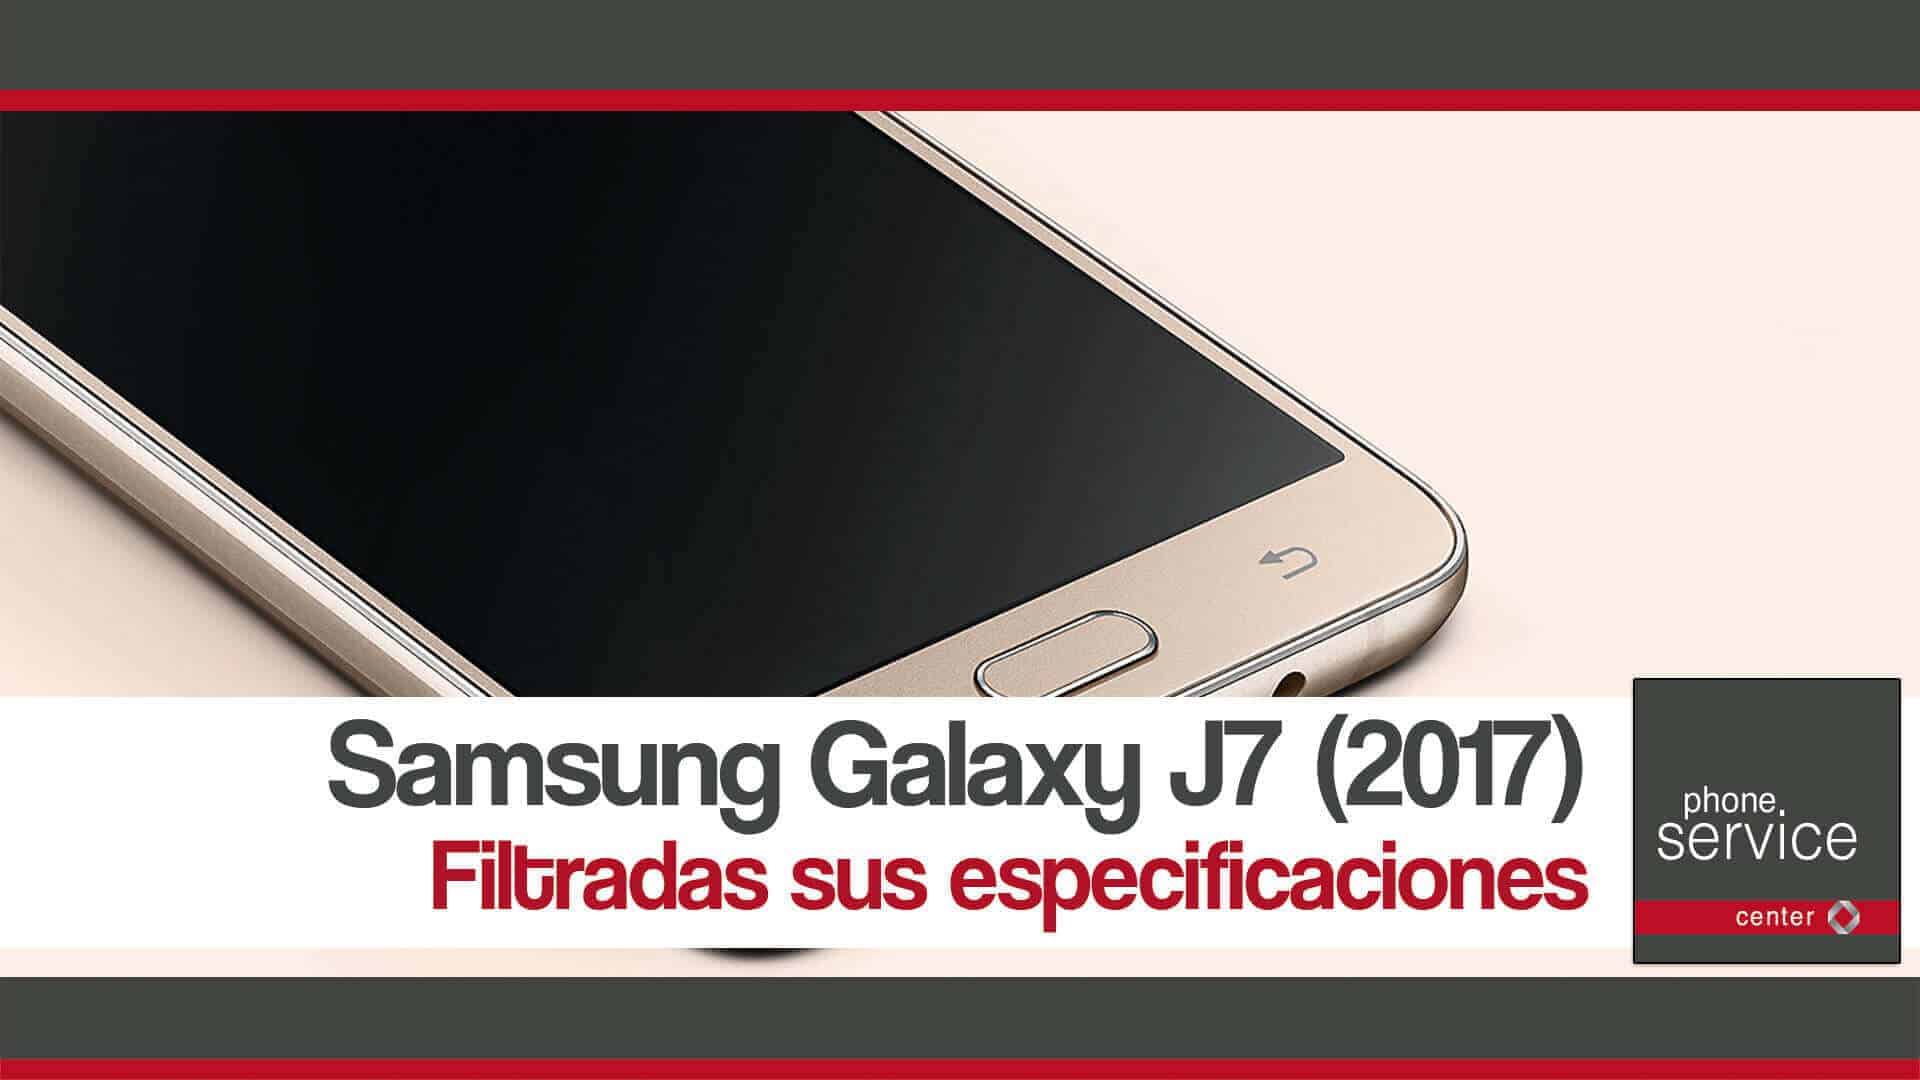 Galaxy J7 (2017) filtradas sus especificaciones